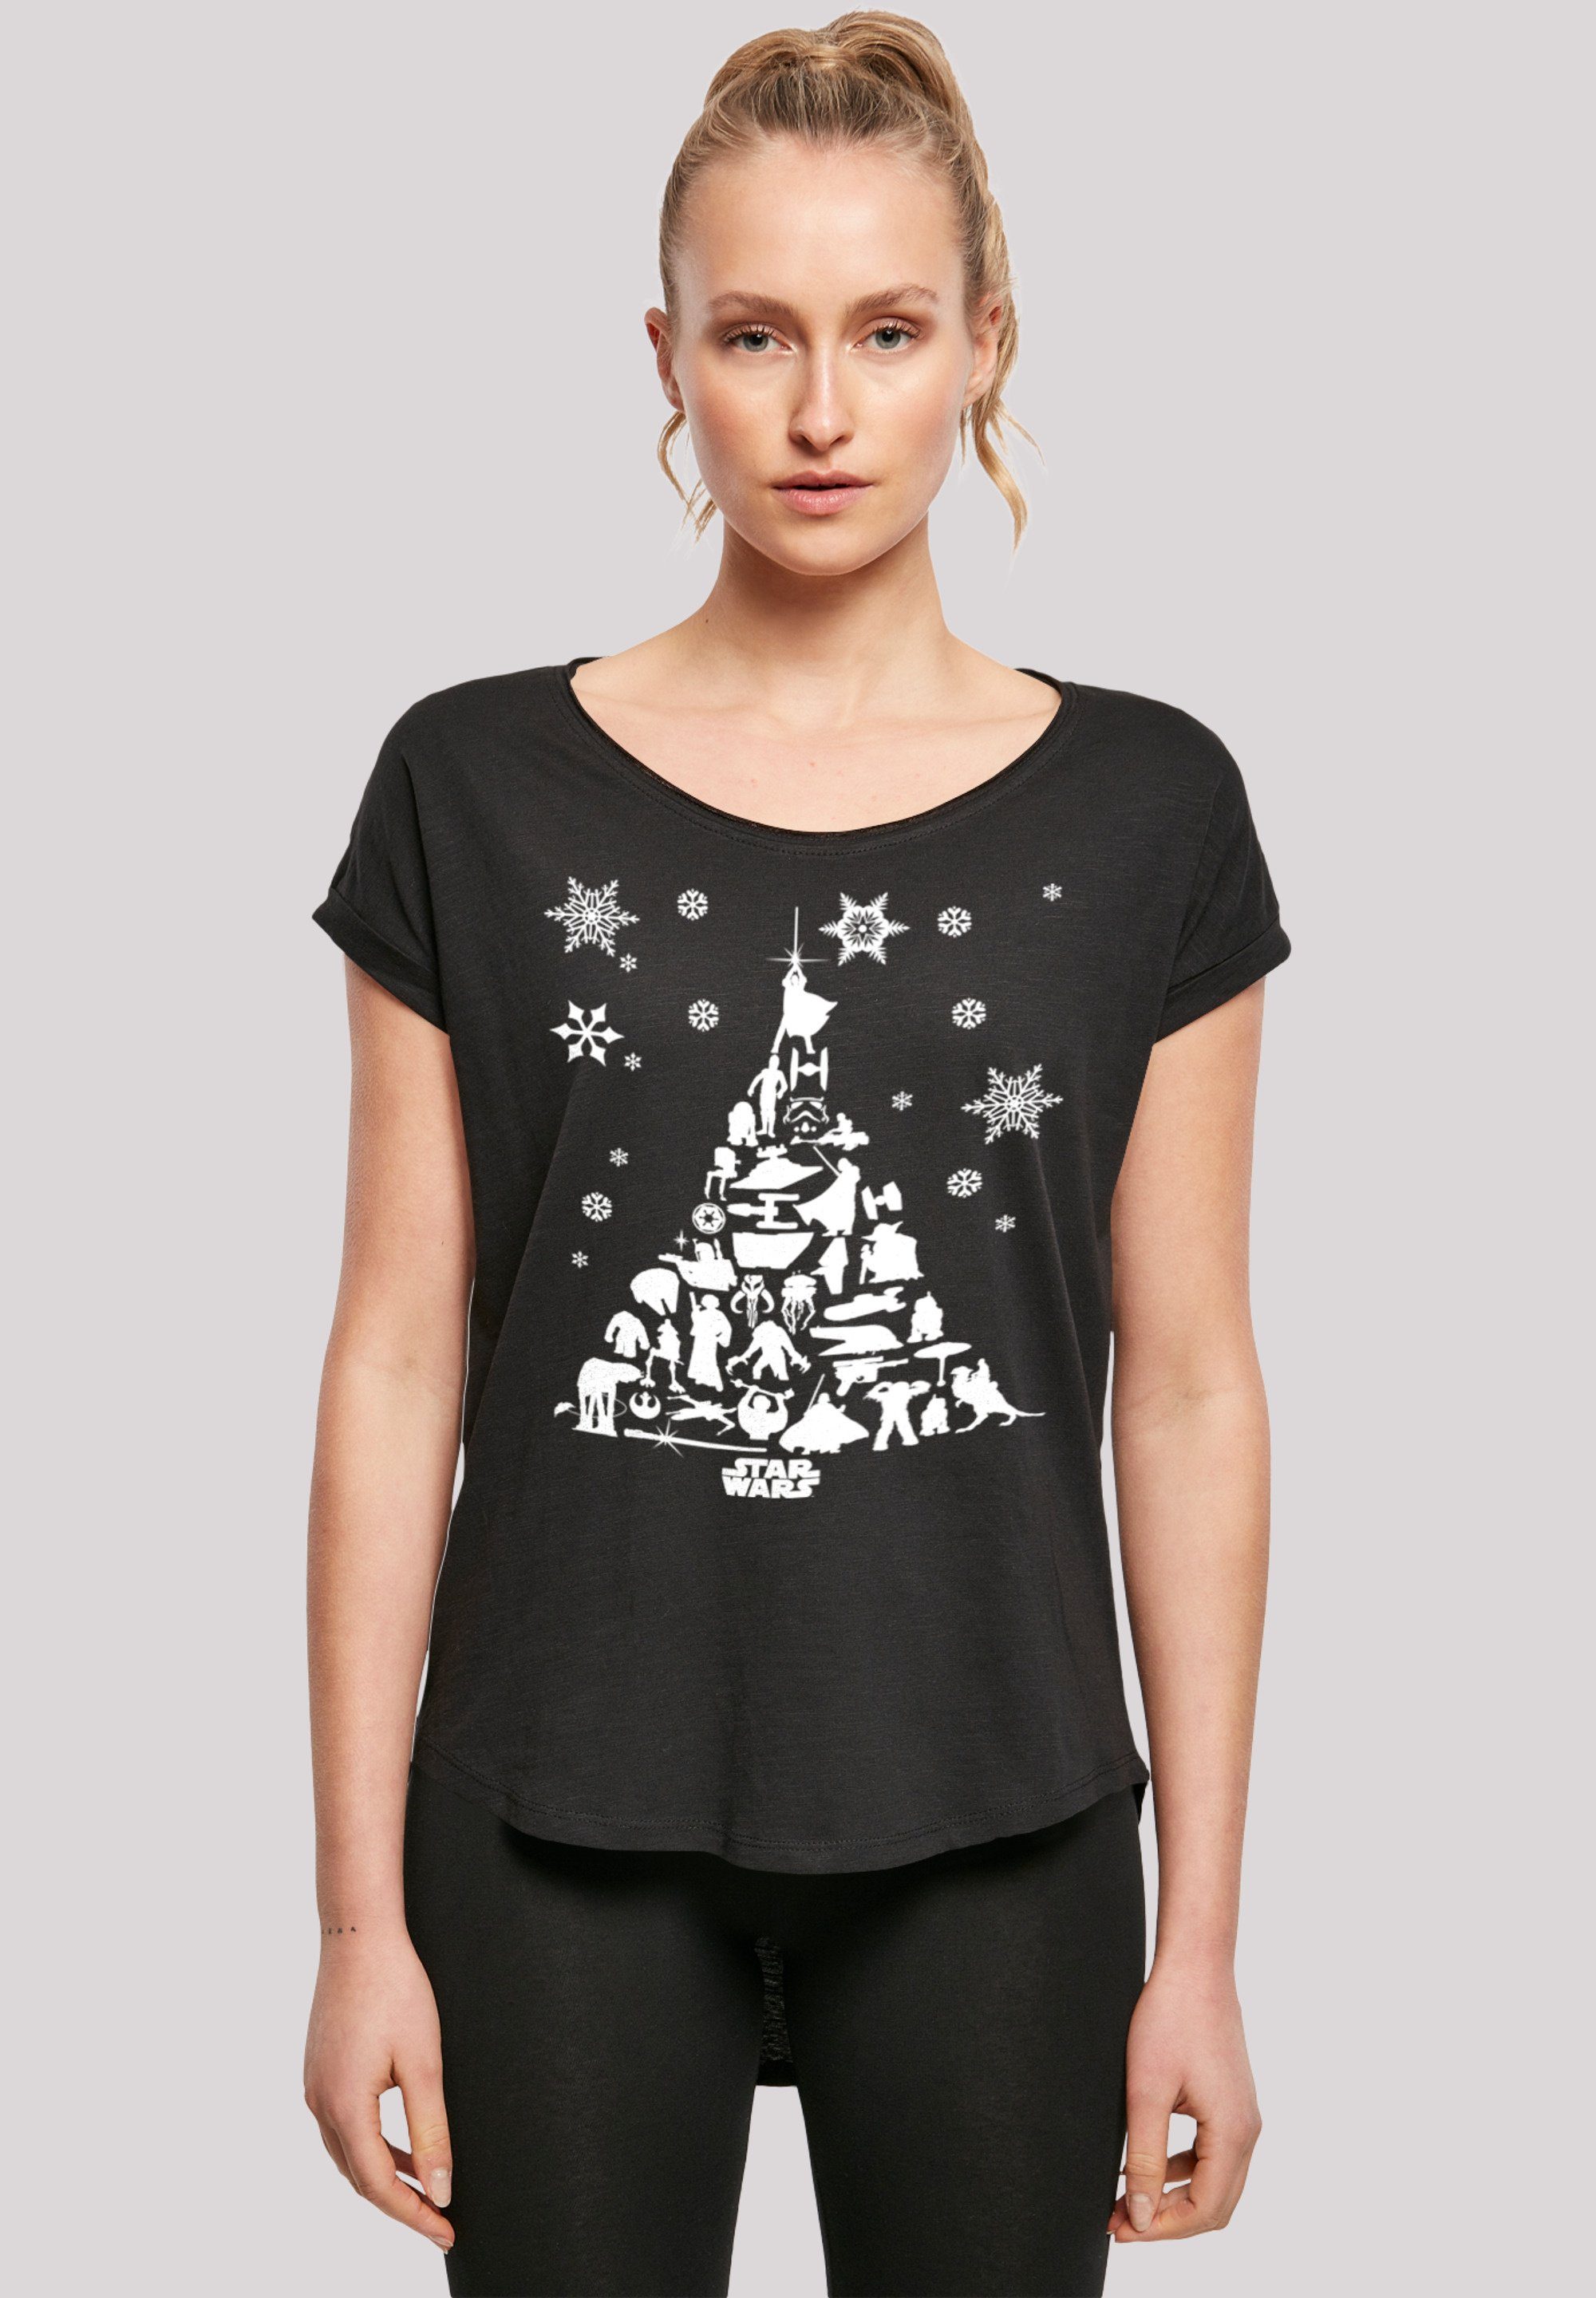 Damen Christmas extra Print, T-Shirt Star Wars lang T-Shirt F4NT4STIC Weihnachtsbaum geschnittenes Hinten